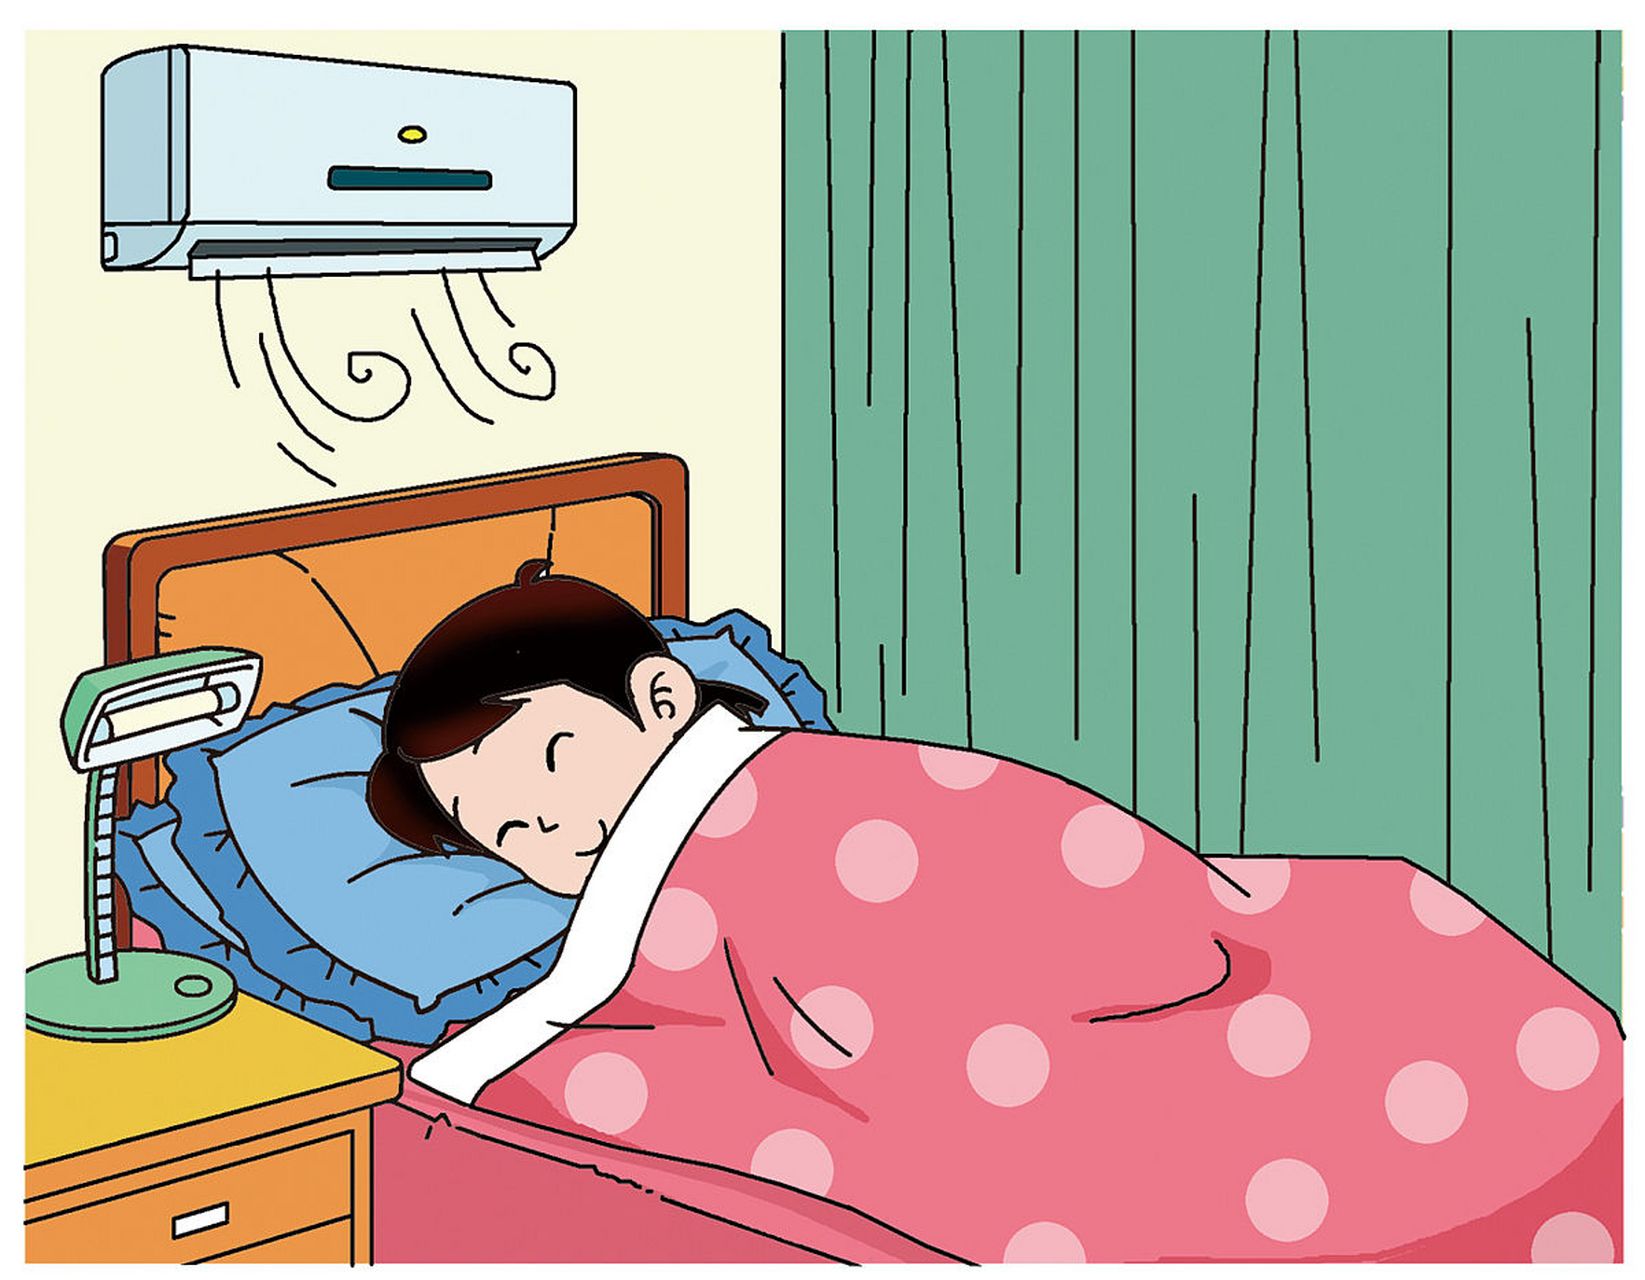 空调房内的空气通常比较干燥,这会导致眼表湿润度降低,从而引发眼睛